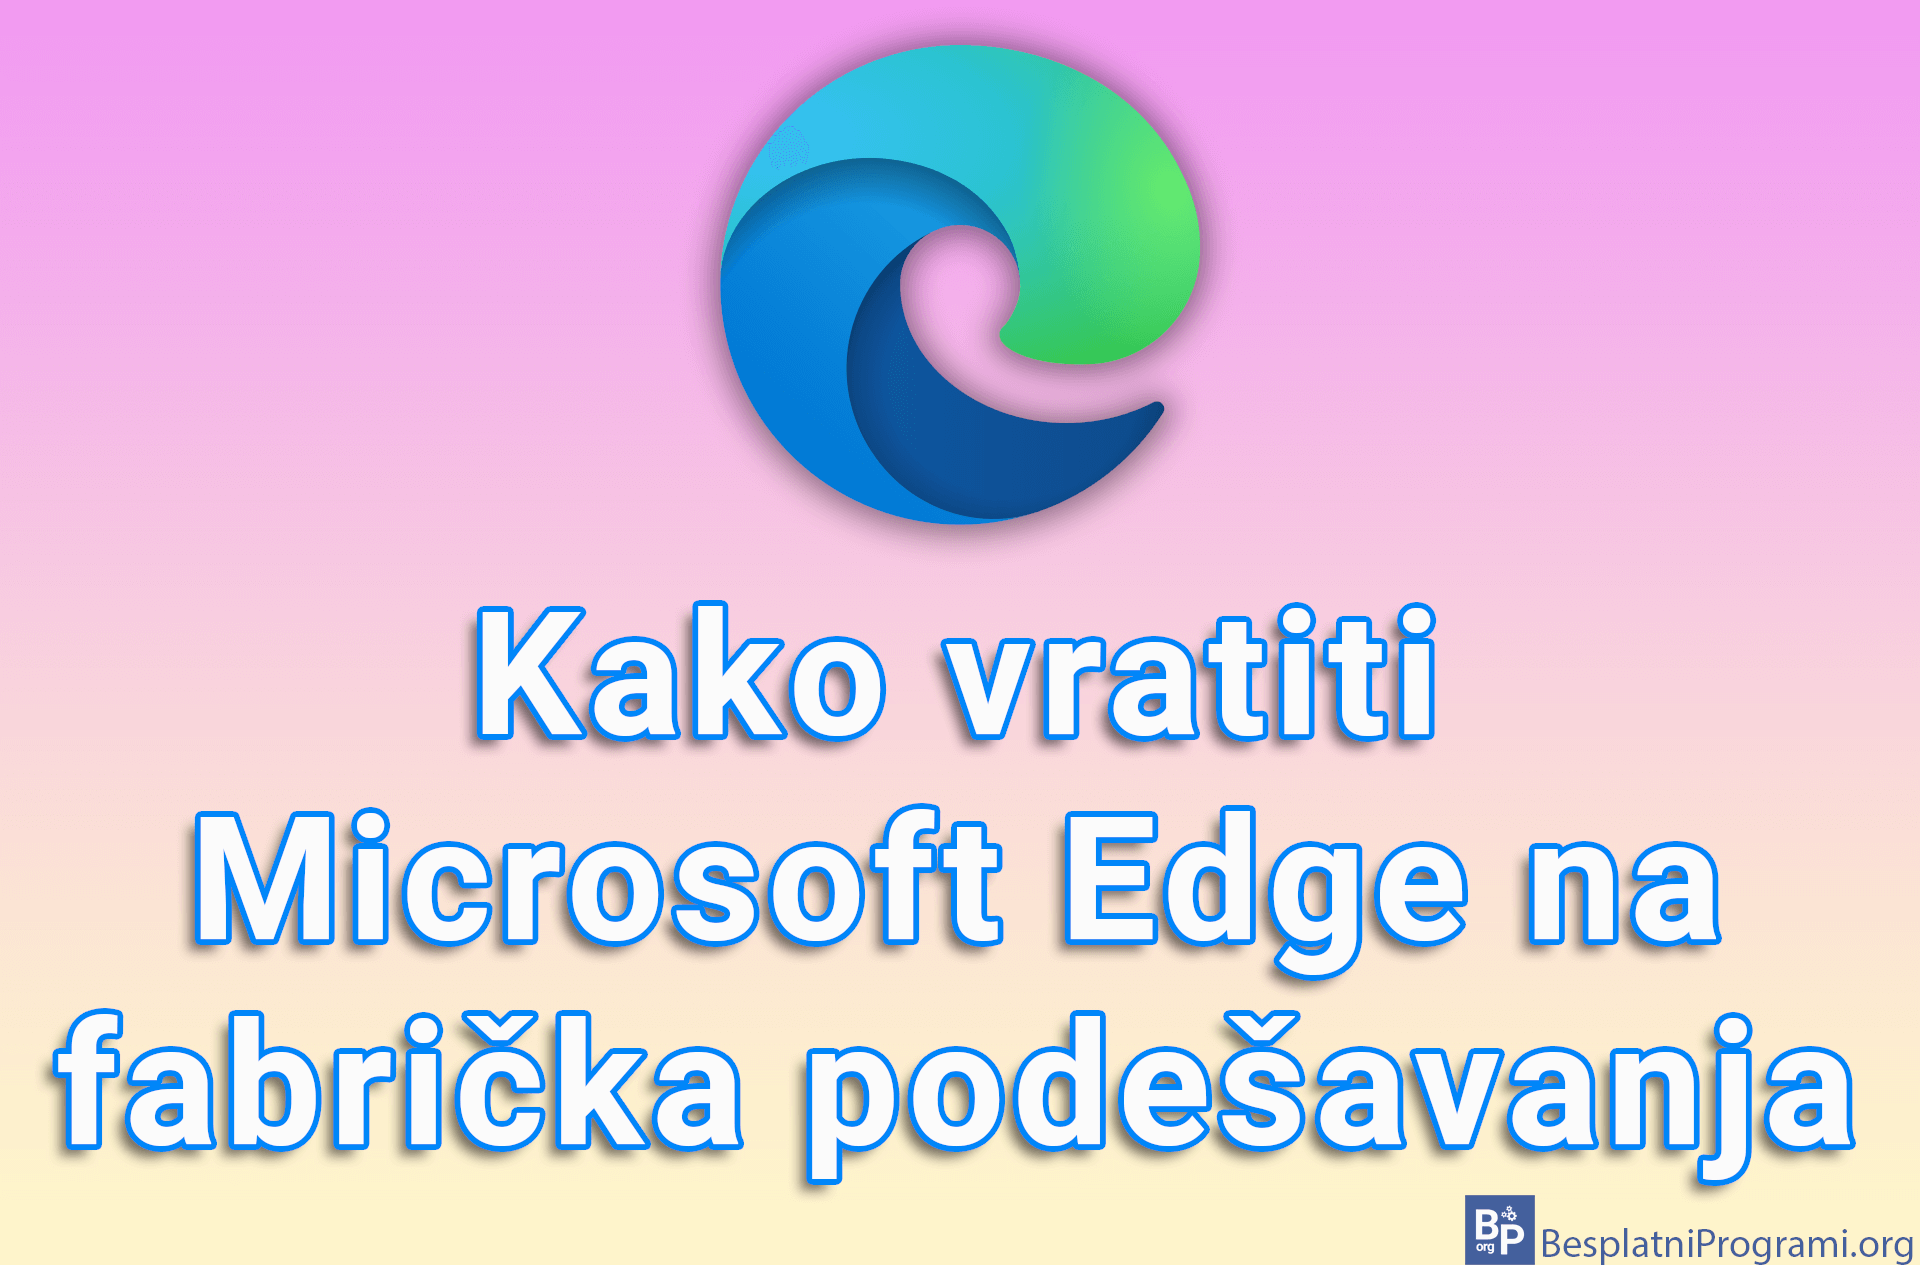 Kako vratiti Microsoft Edge na fabrička podešavanja